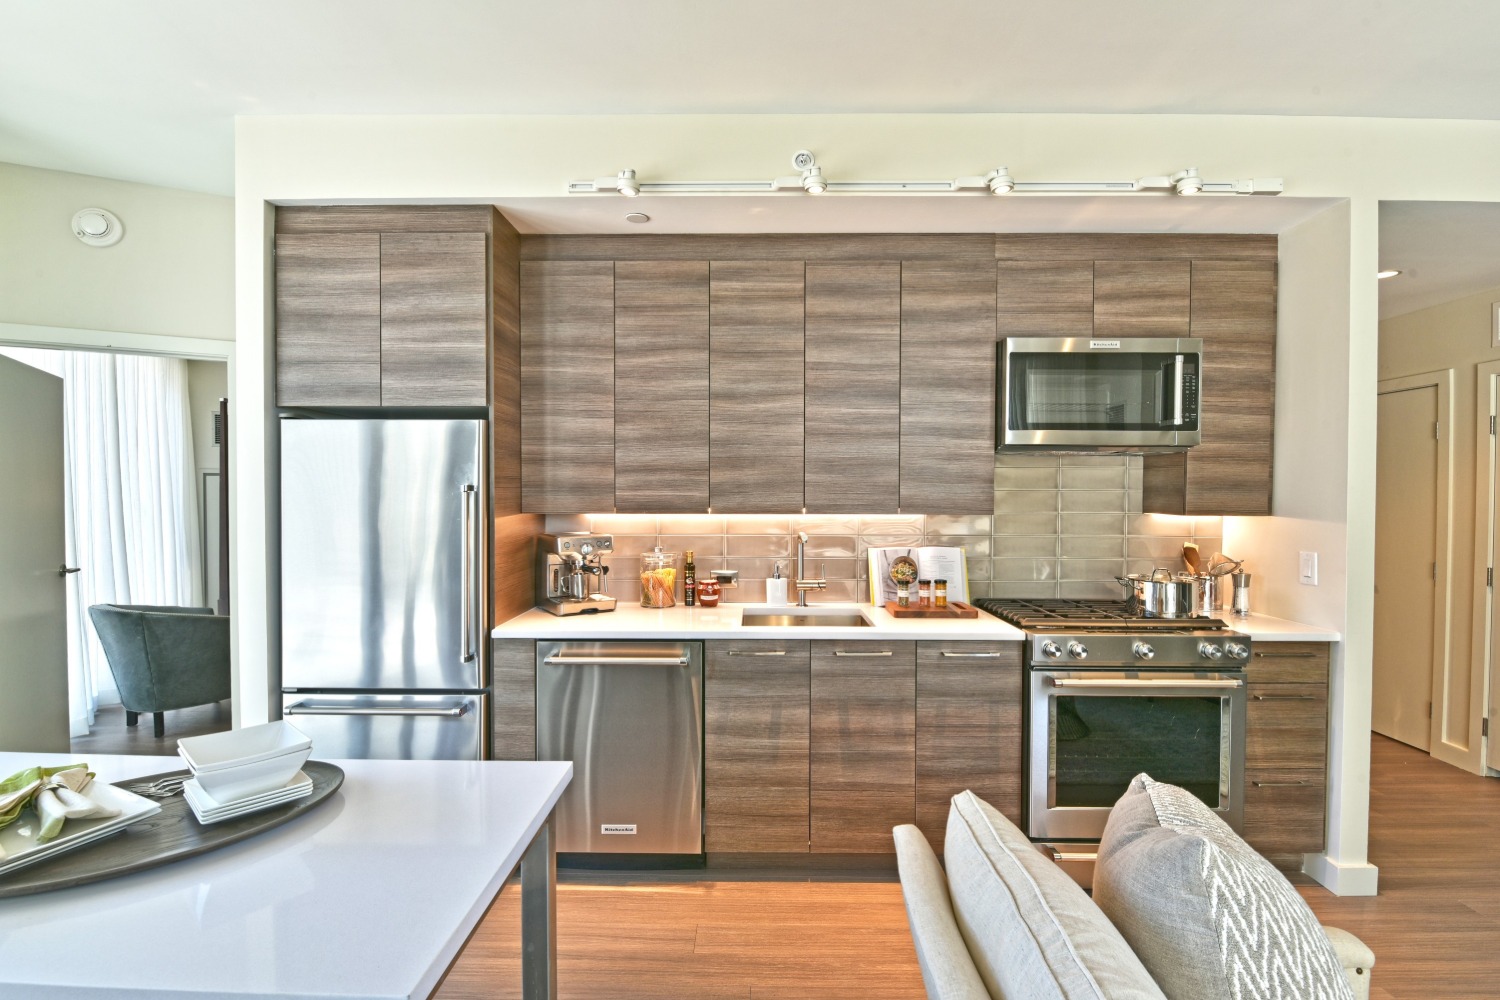 30 Dalton :  Kitchens featuring an array of KitchenAid appliances.